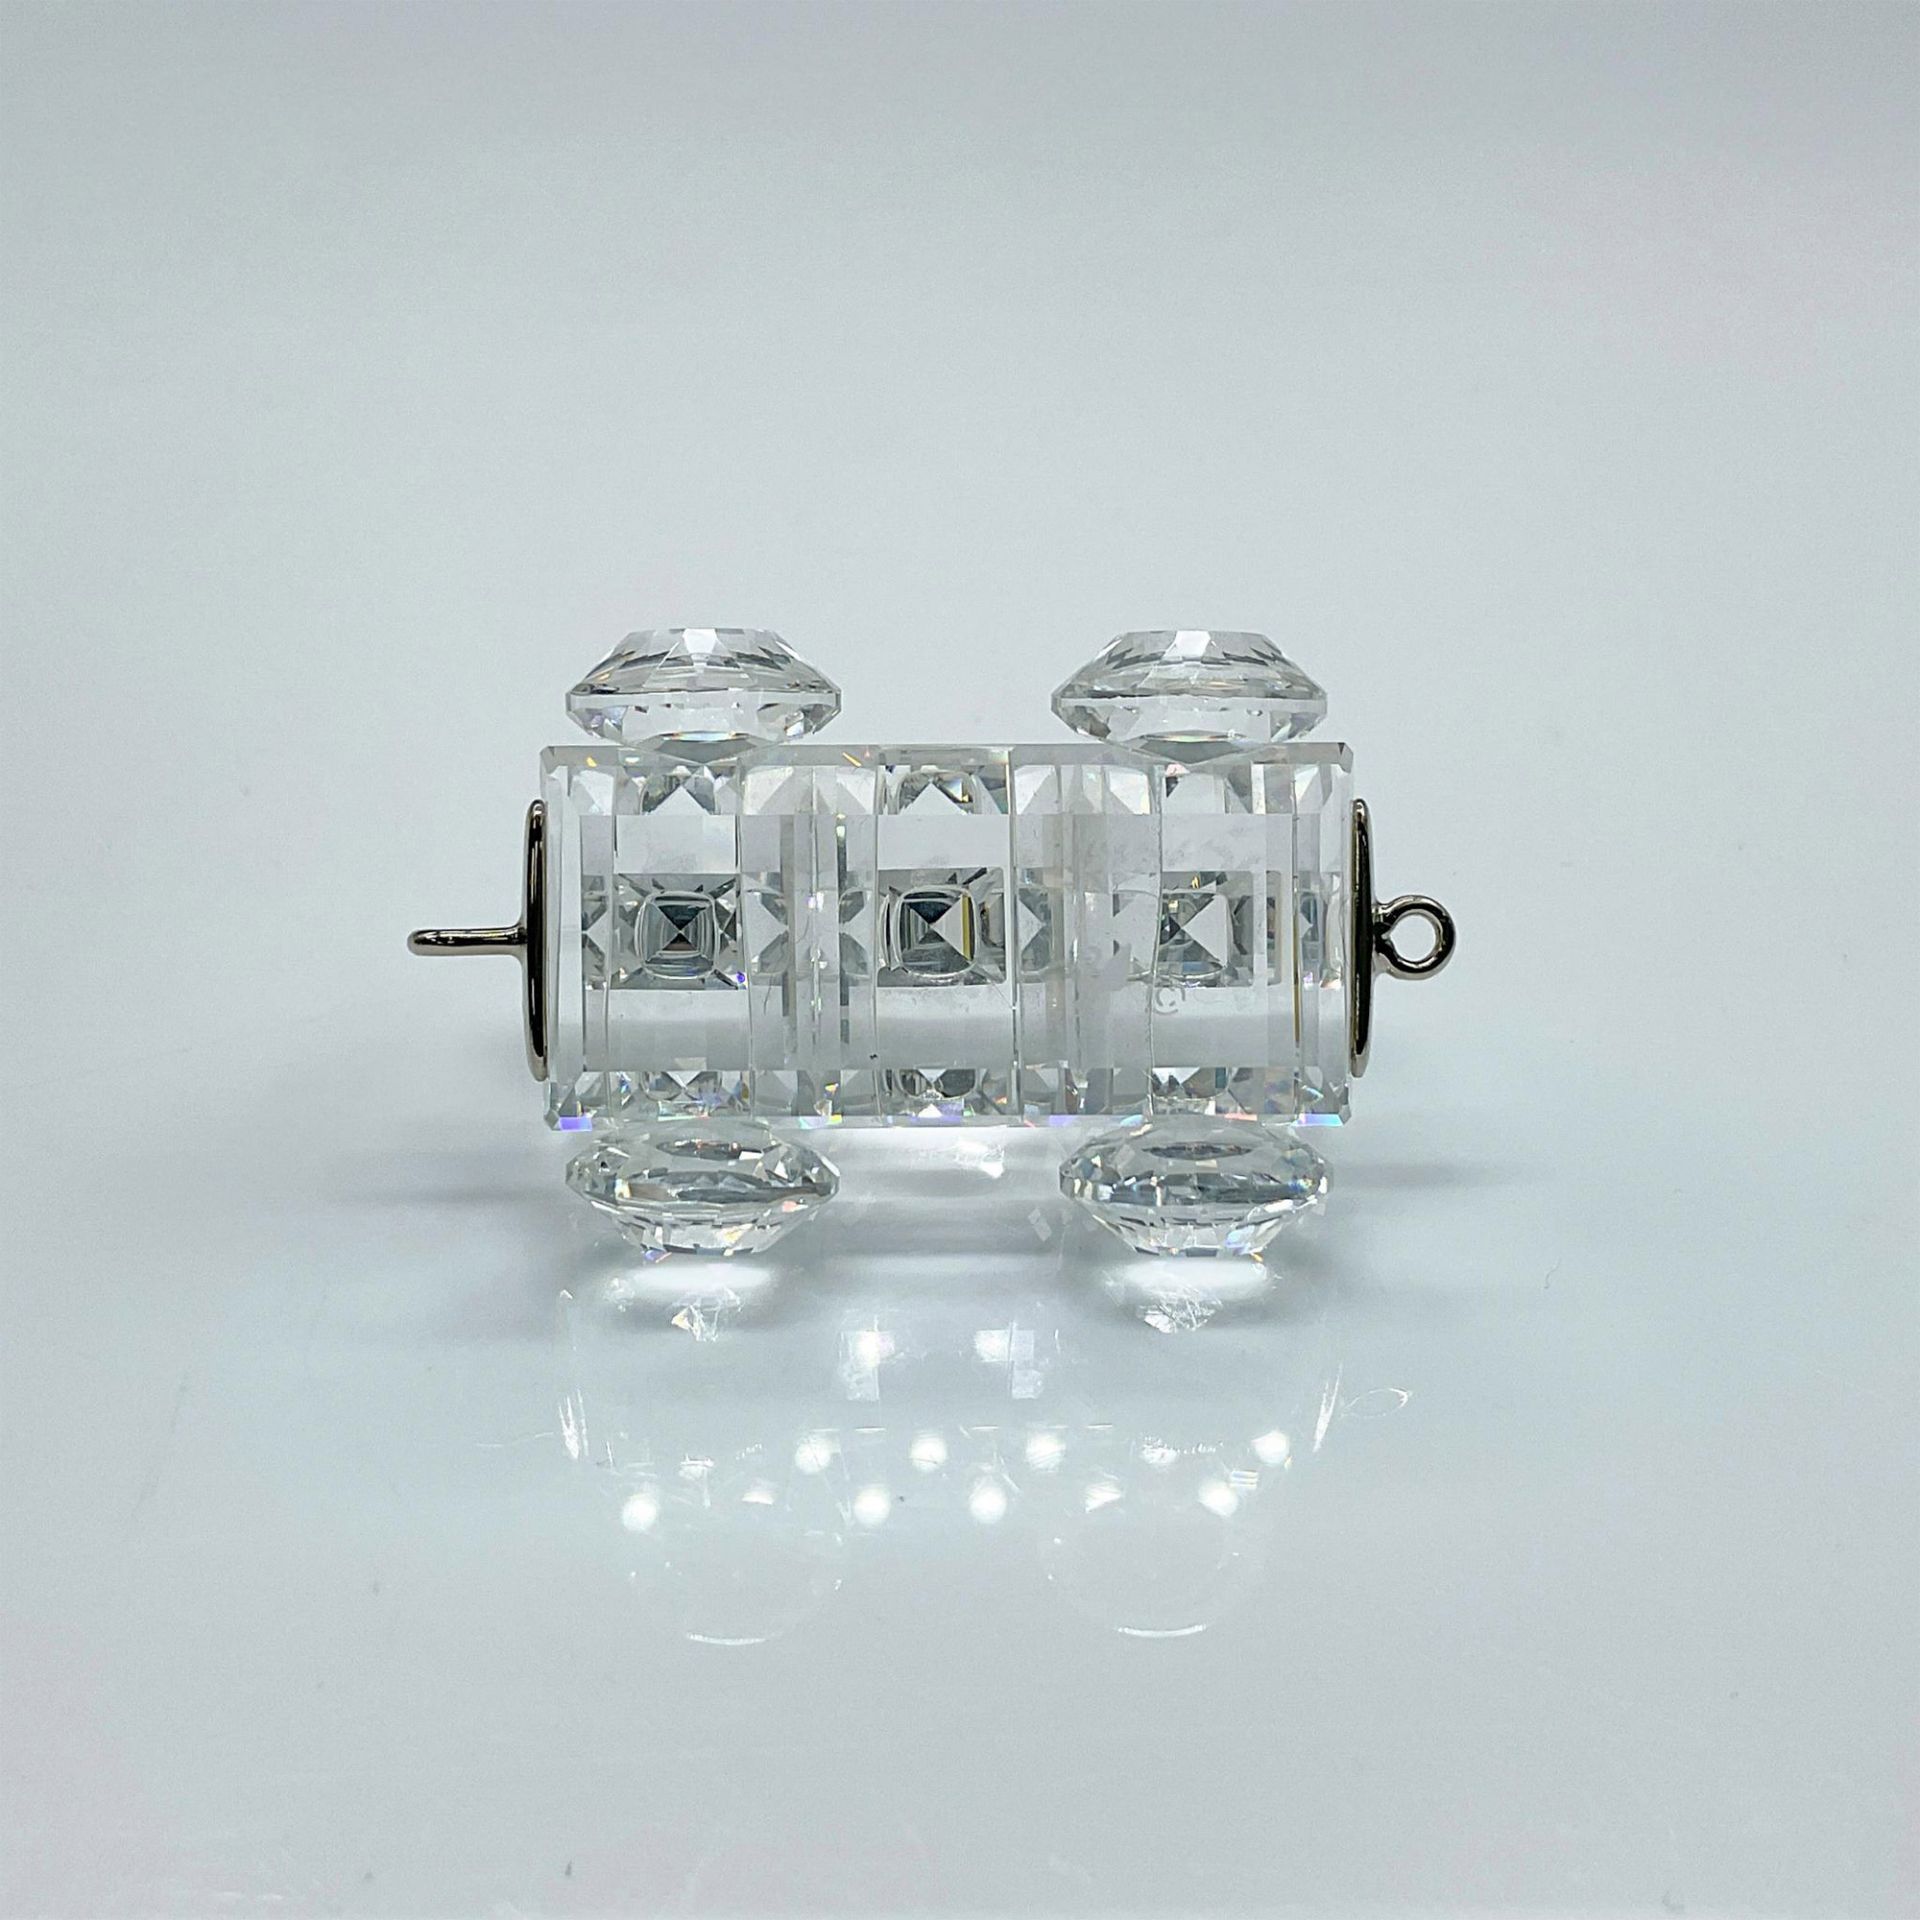 Swarovski Silver Crystal Figurine, Petrol Wagon Train Car - Image 3 of 4